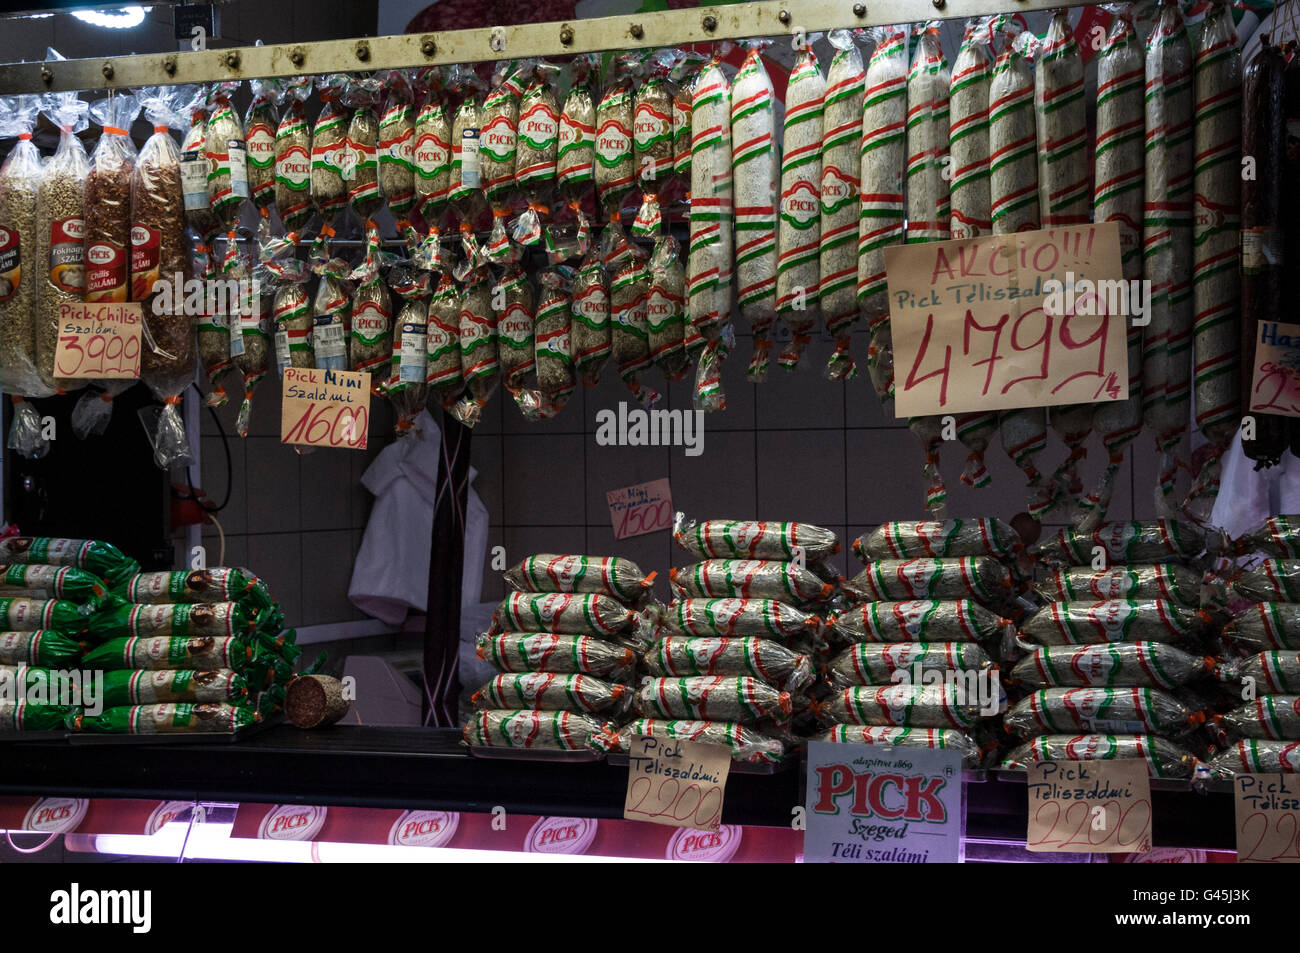 Ungarische Salami auf Verkauf in zentralen Markthalle, die größte und älteste Markthalle in Budapest in Ungarn Stockfoto